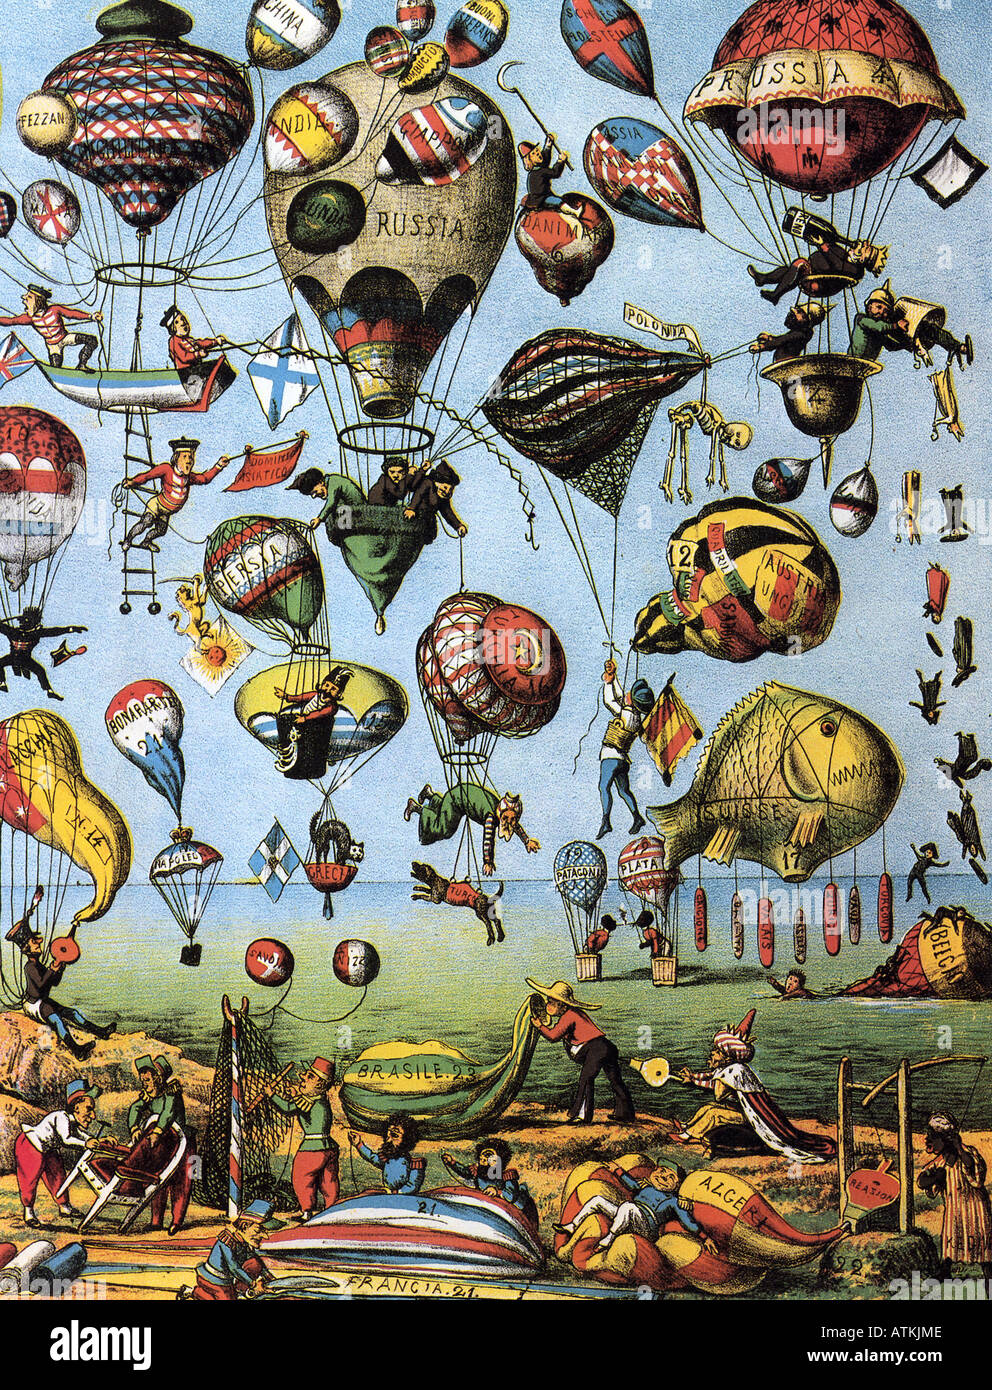 Globos de historieta italiana de 1875 ilustra la fascinación con globos aerostáticos en todo el mundo Foto de stock